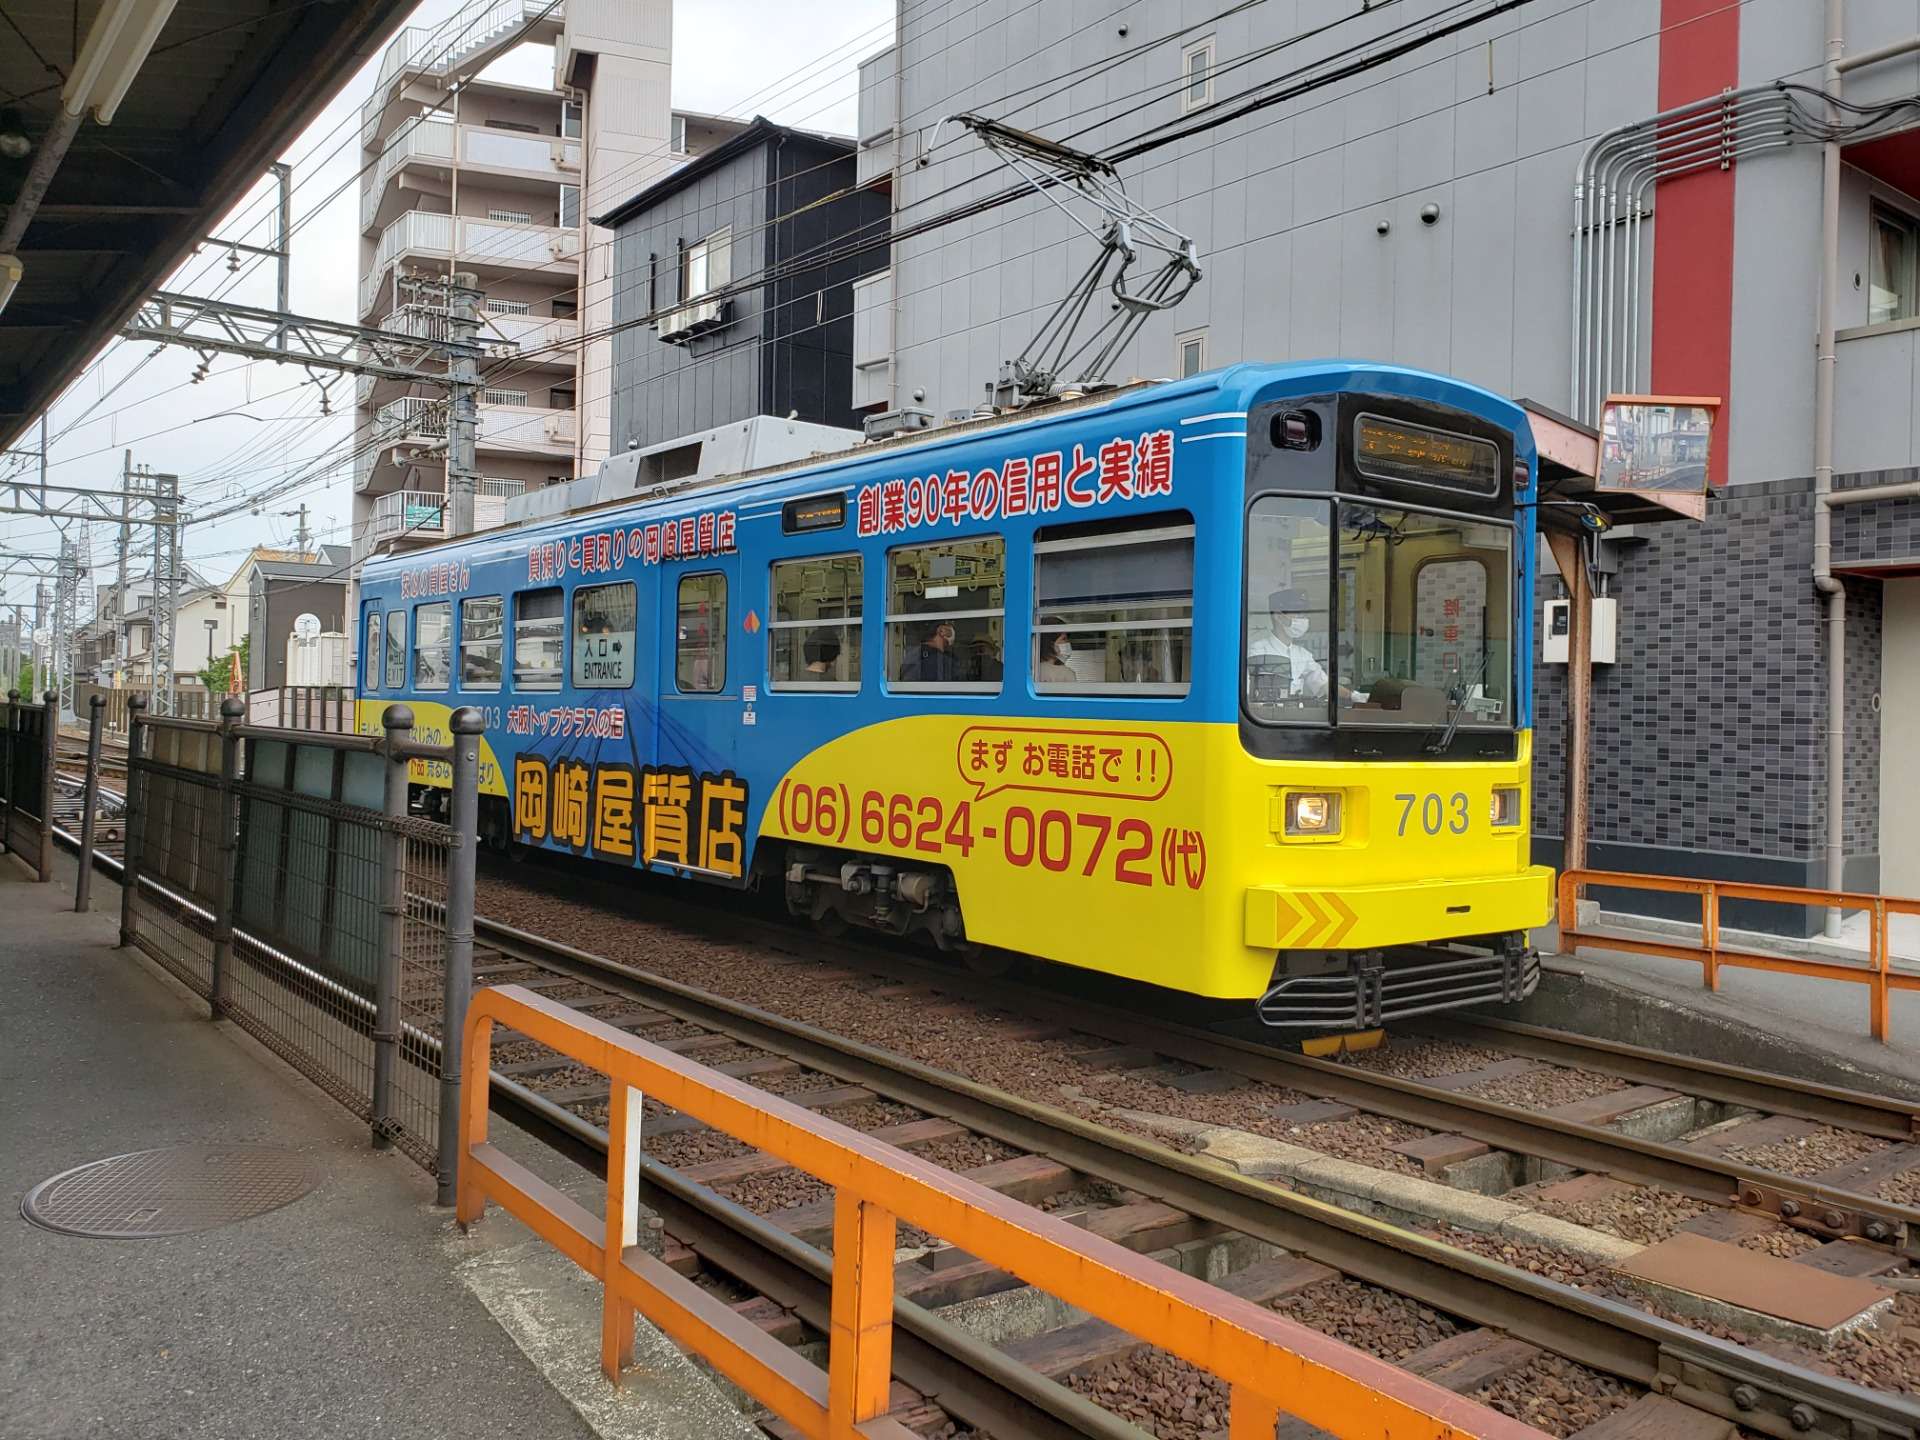 大阪のチンチン電車に初めて乗車しました！【マッシュアップ不動産販売株式会社】